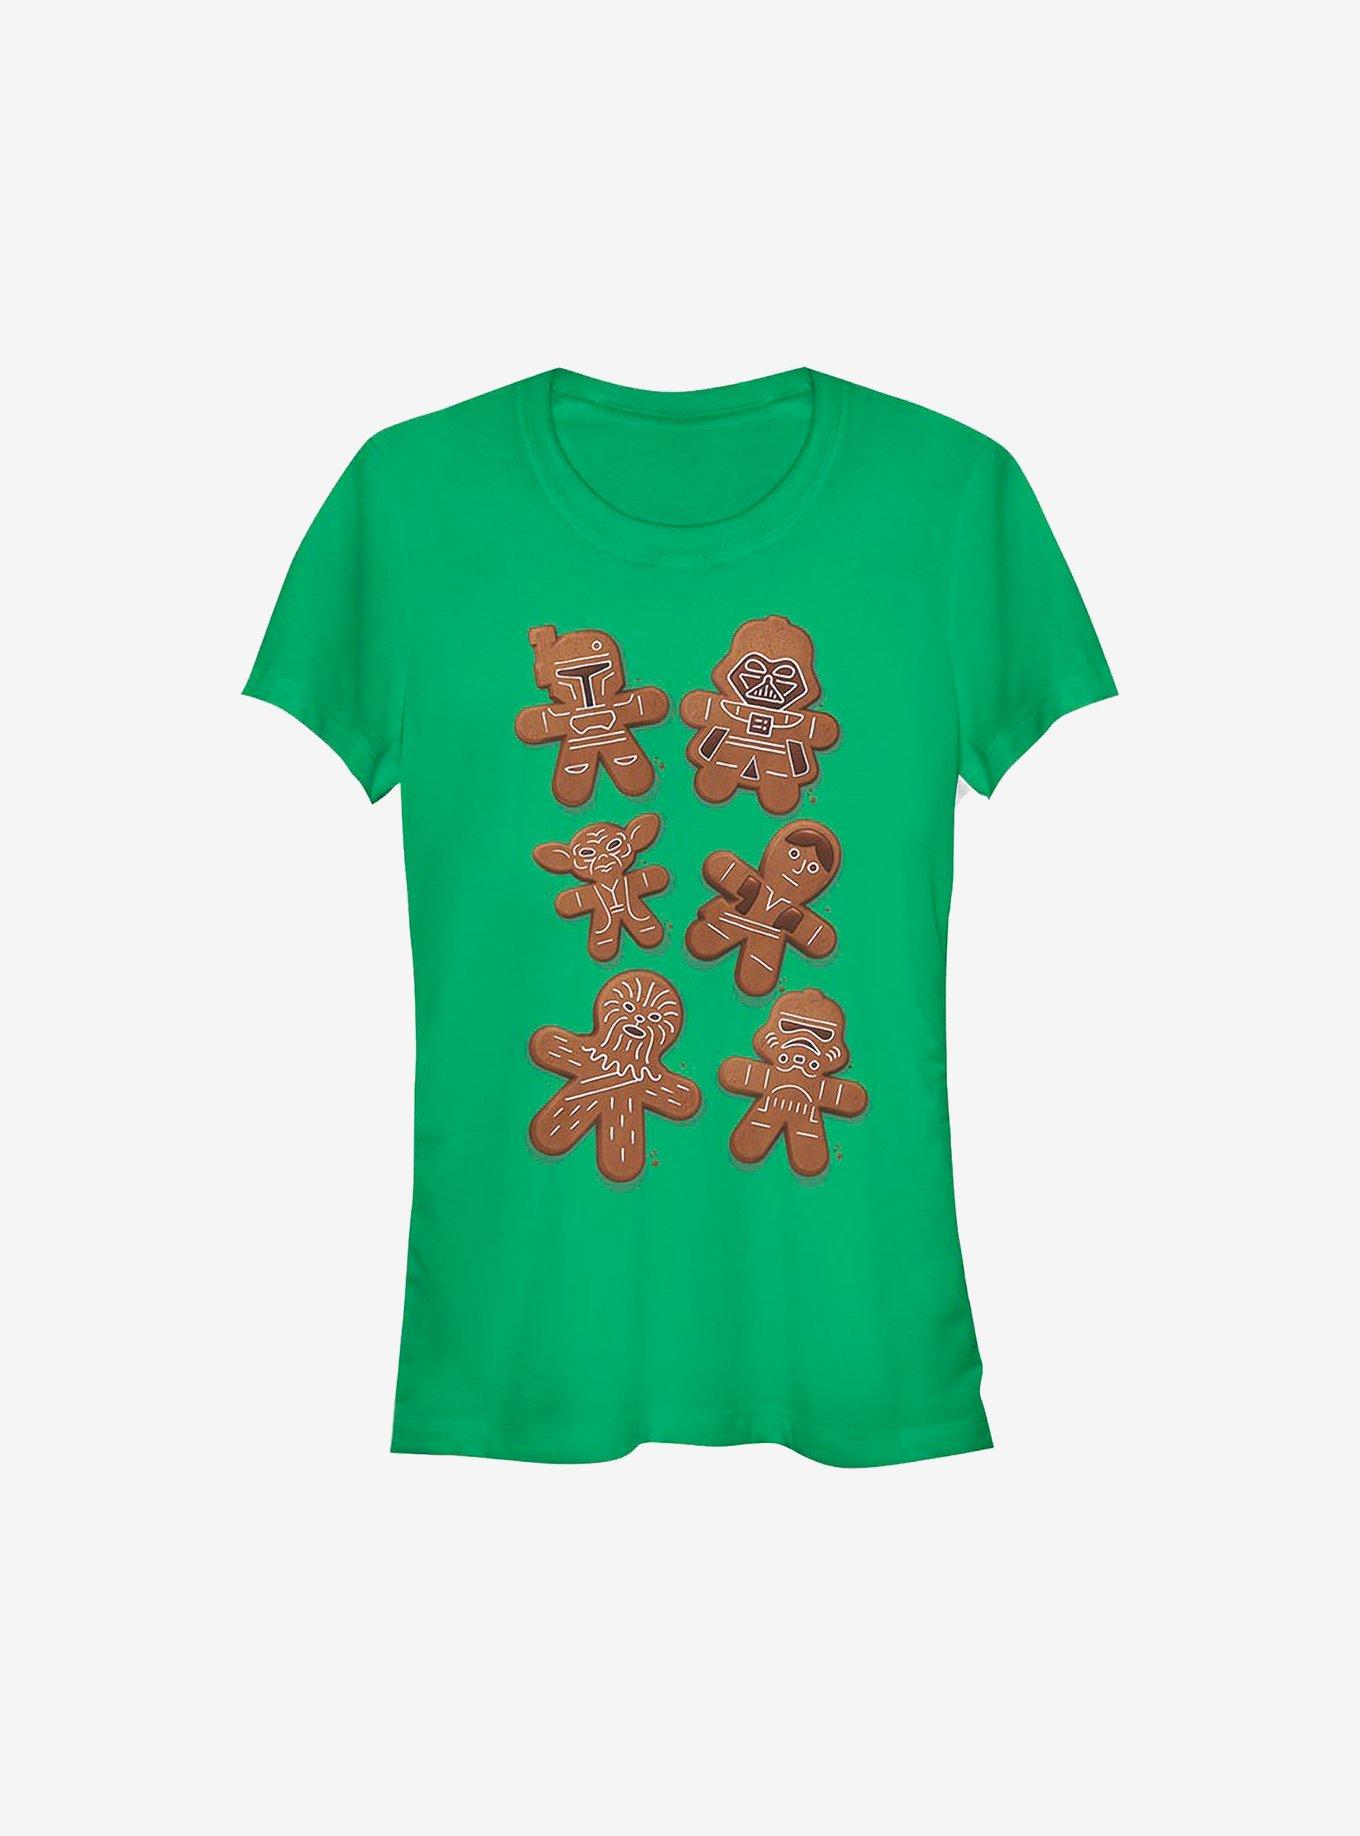 Star Wars Gingerbread Wars Holiday Girls T-Shirt, KELLY, hi-res